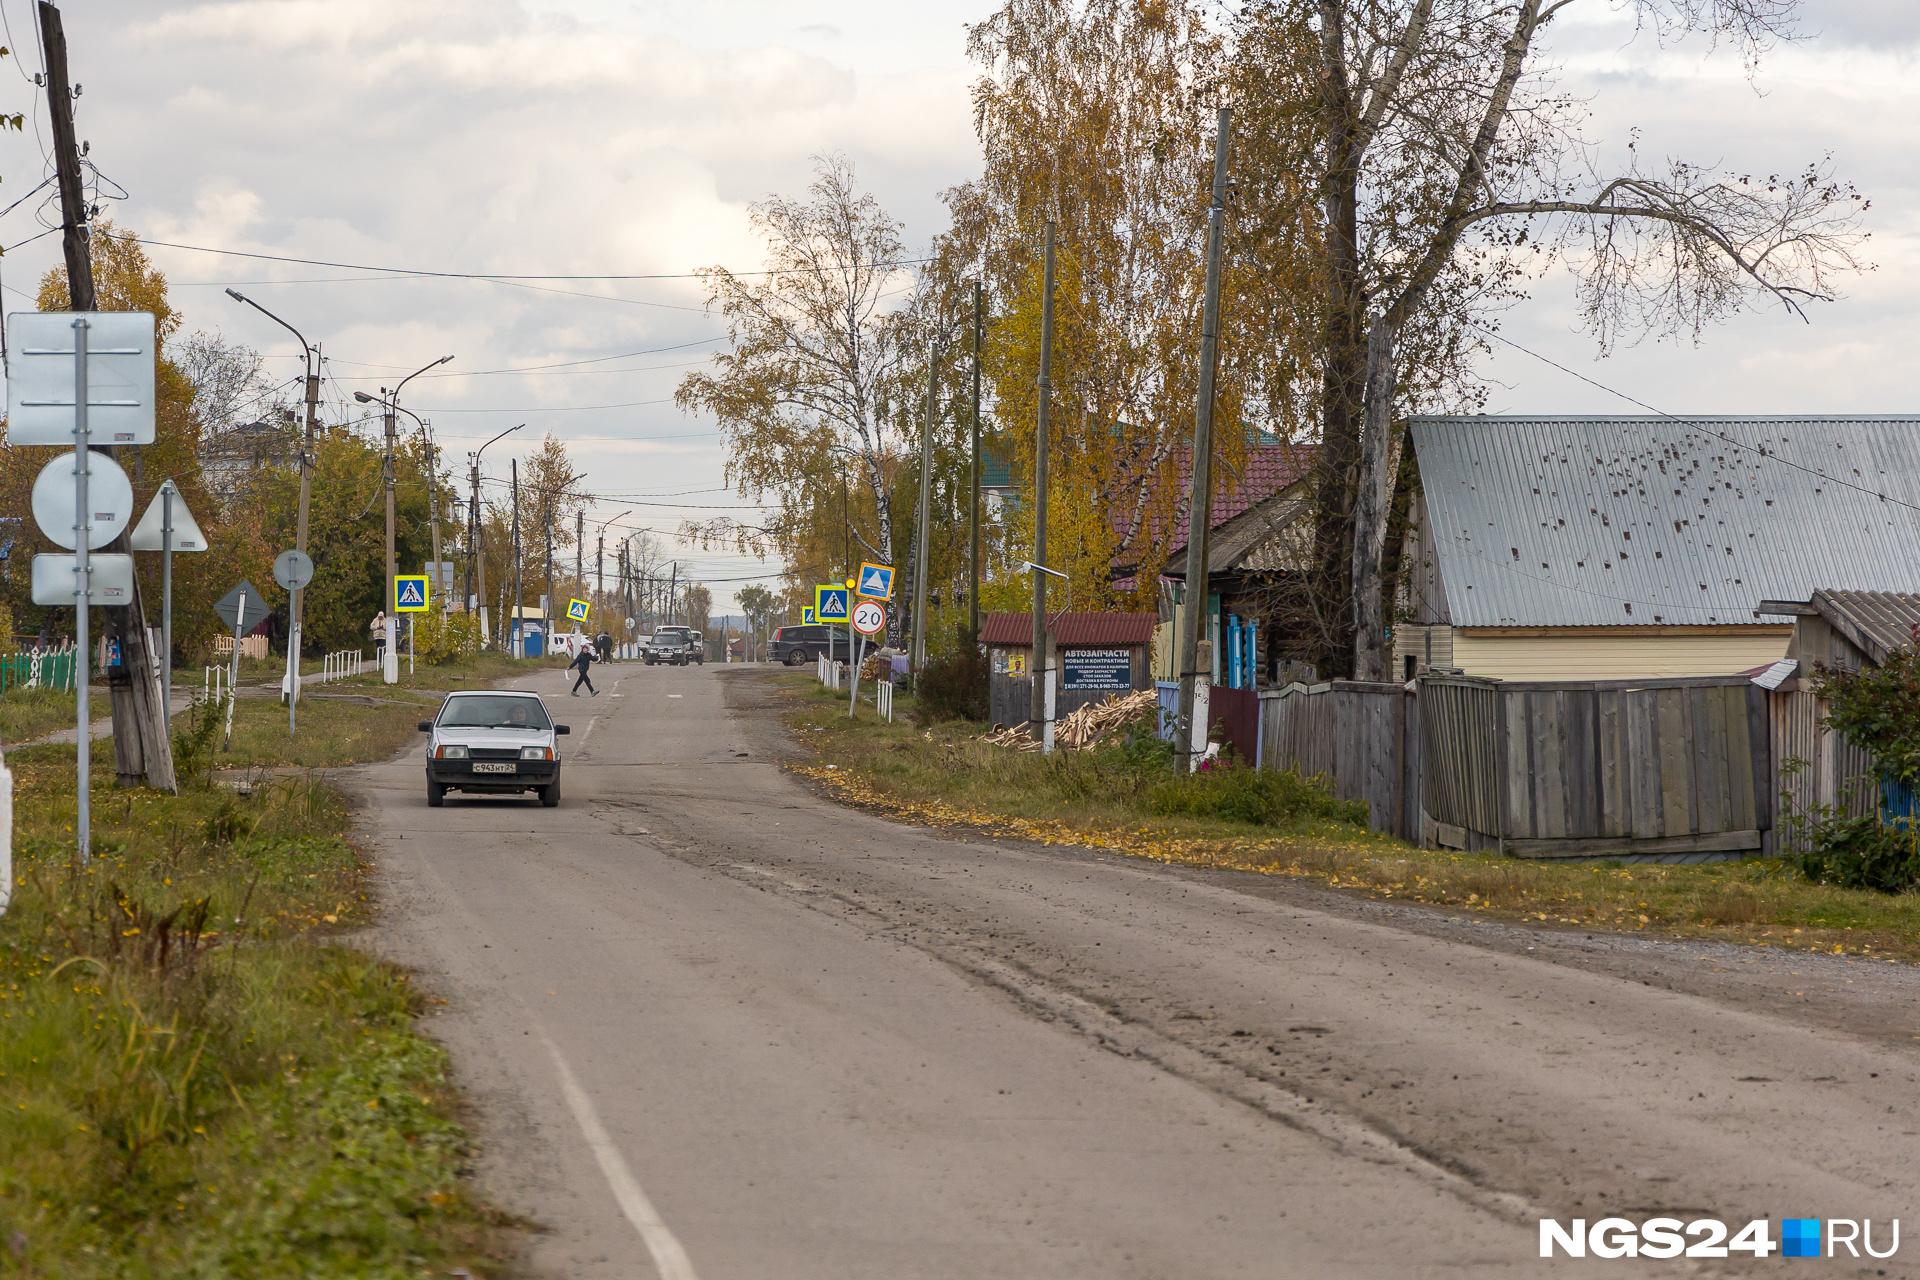 Козулька — обычный российский поселок с обычными российскими проблемами